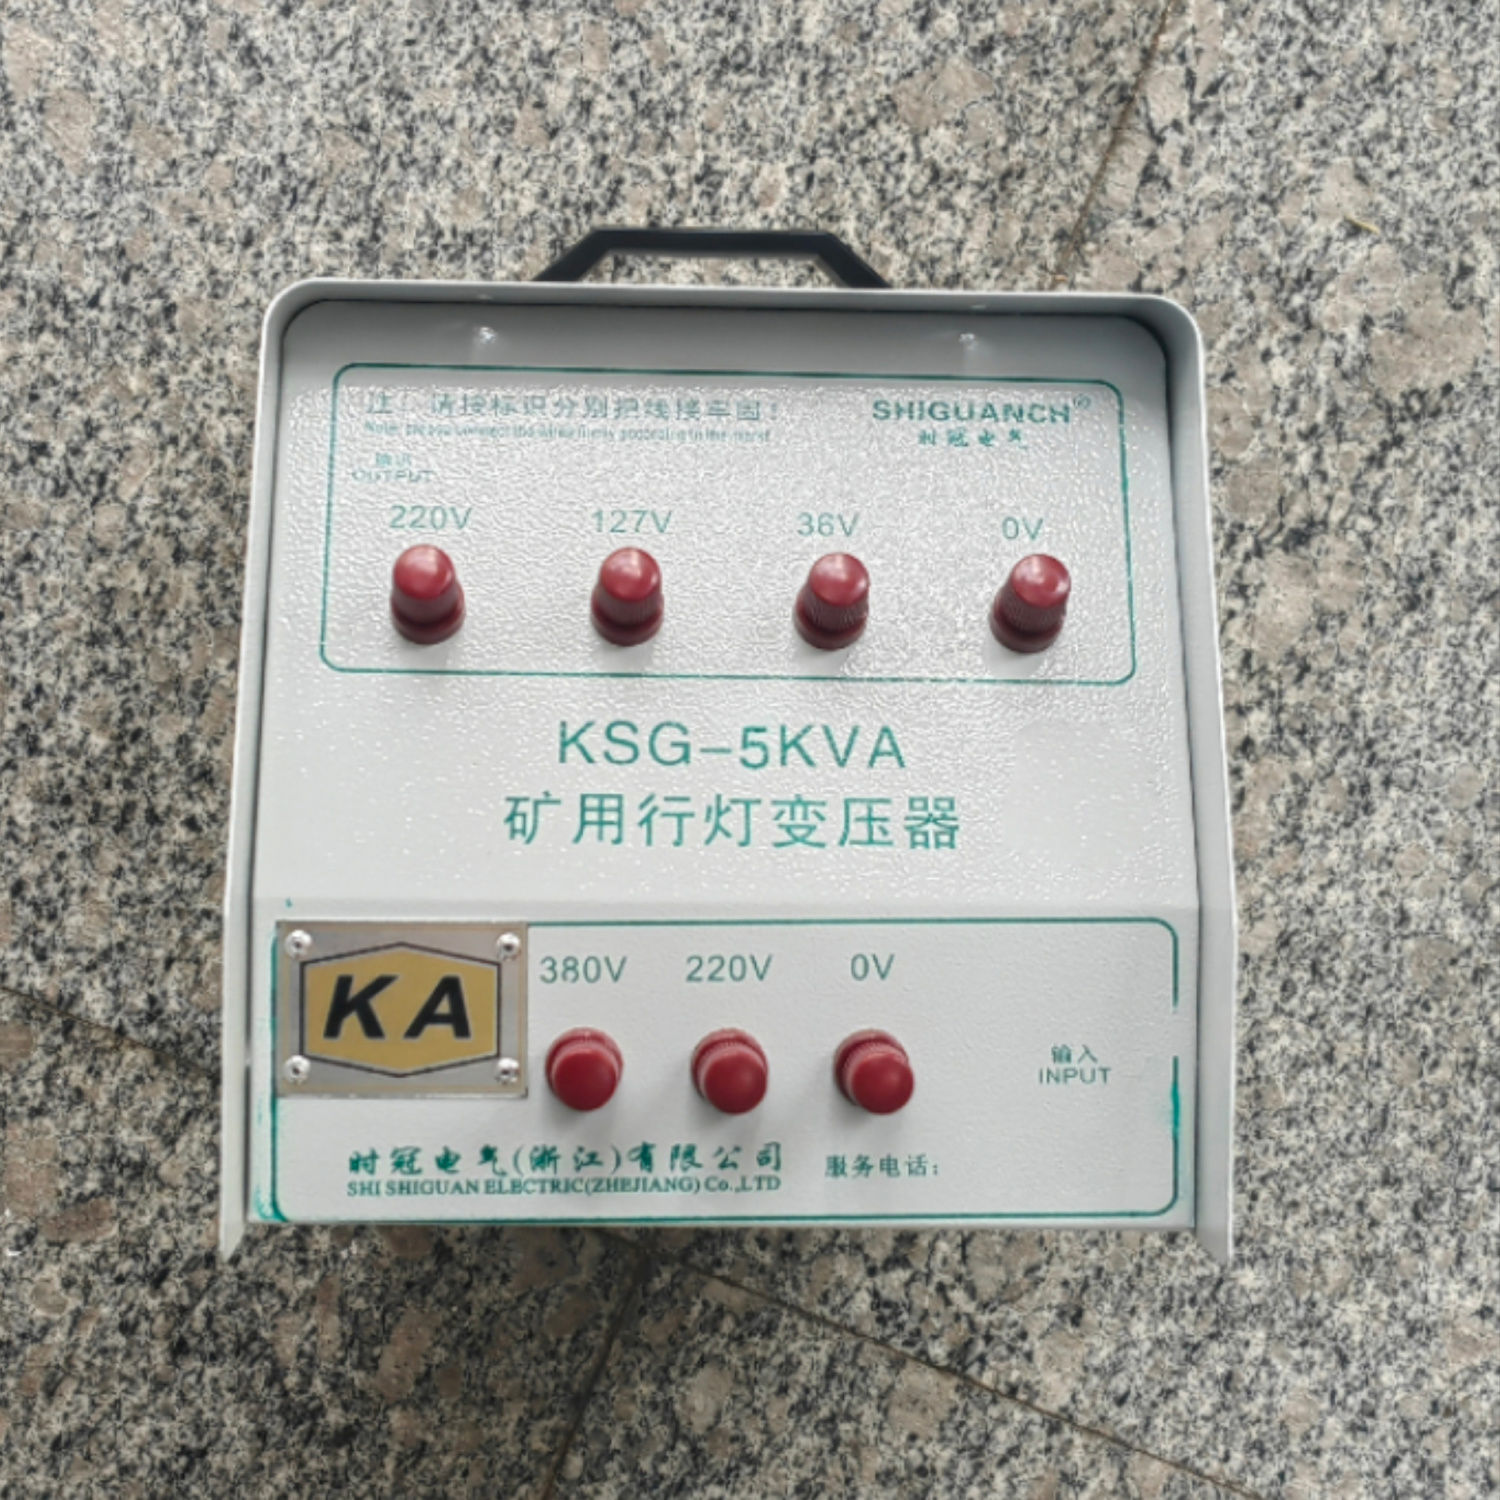 KSG-5KVA矿用行灯变压器供货商报价、哪家比较好、公司批发、多少钱 浙江矿用行灯变压器